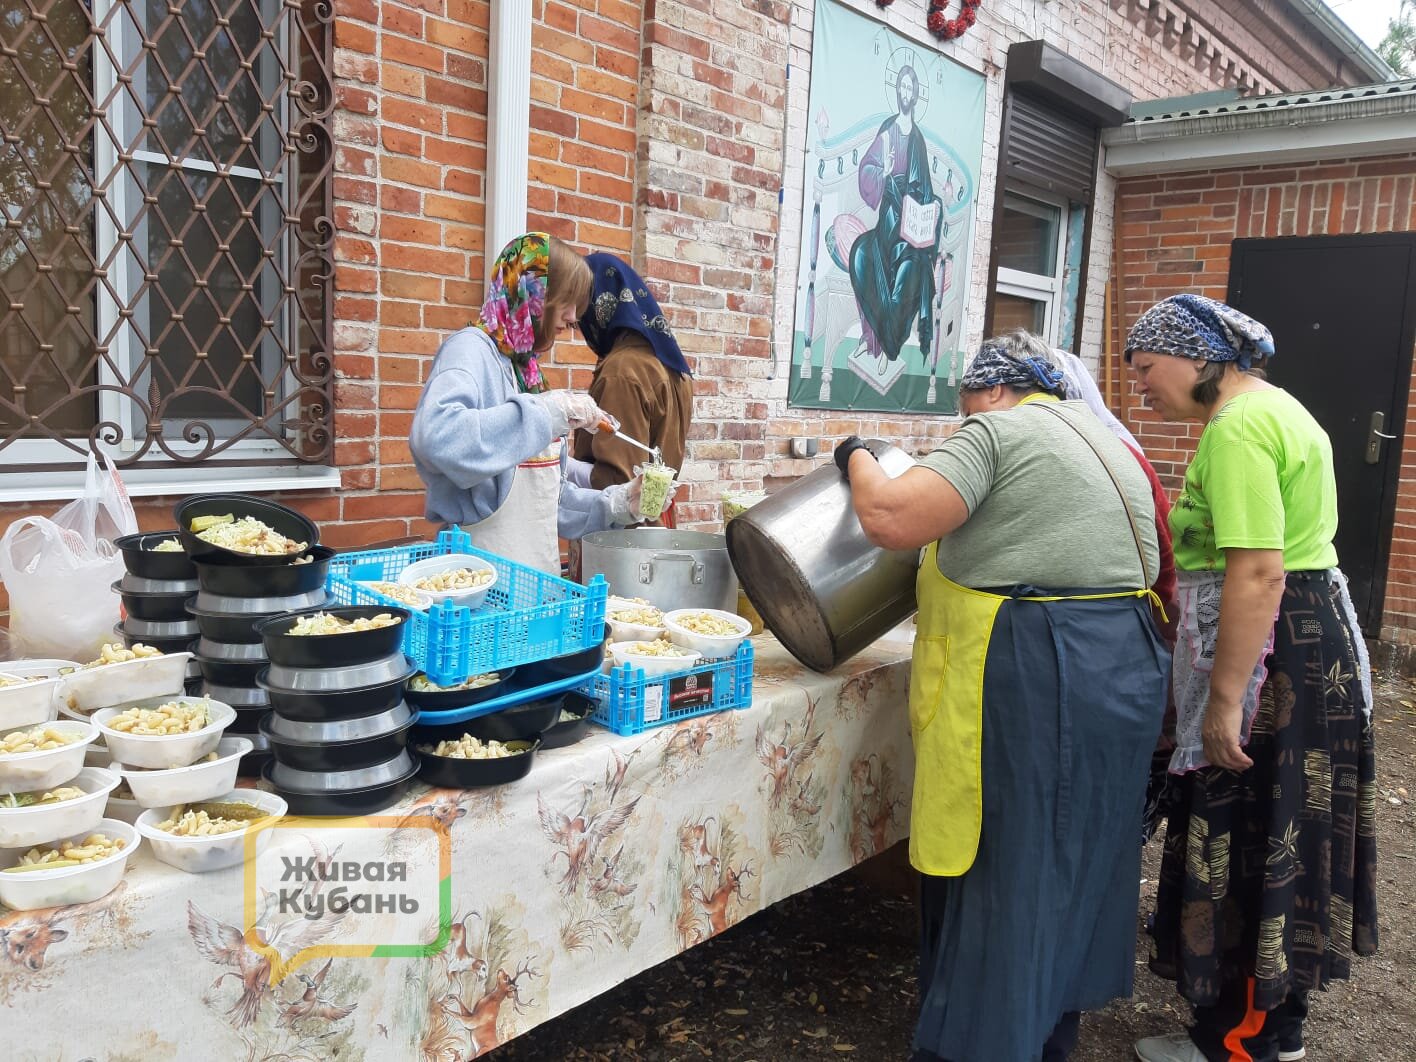 Едят дрожащими руками: в Краснодаре волонтеры кормят голодных, обездоленных людей